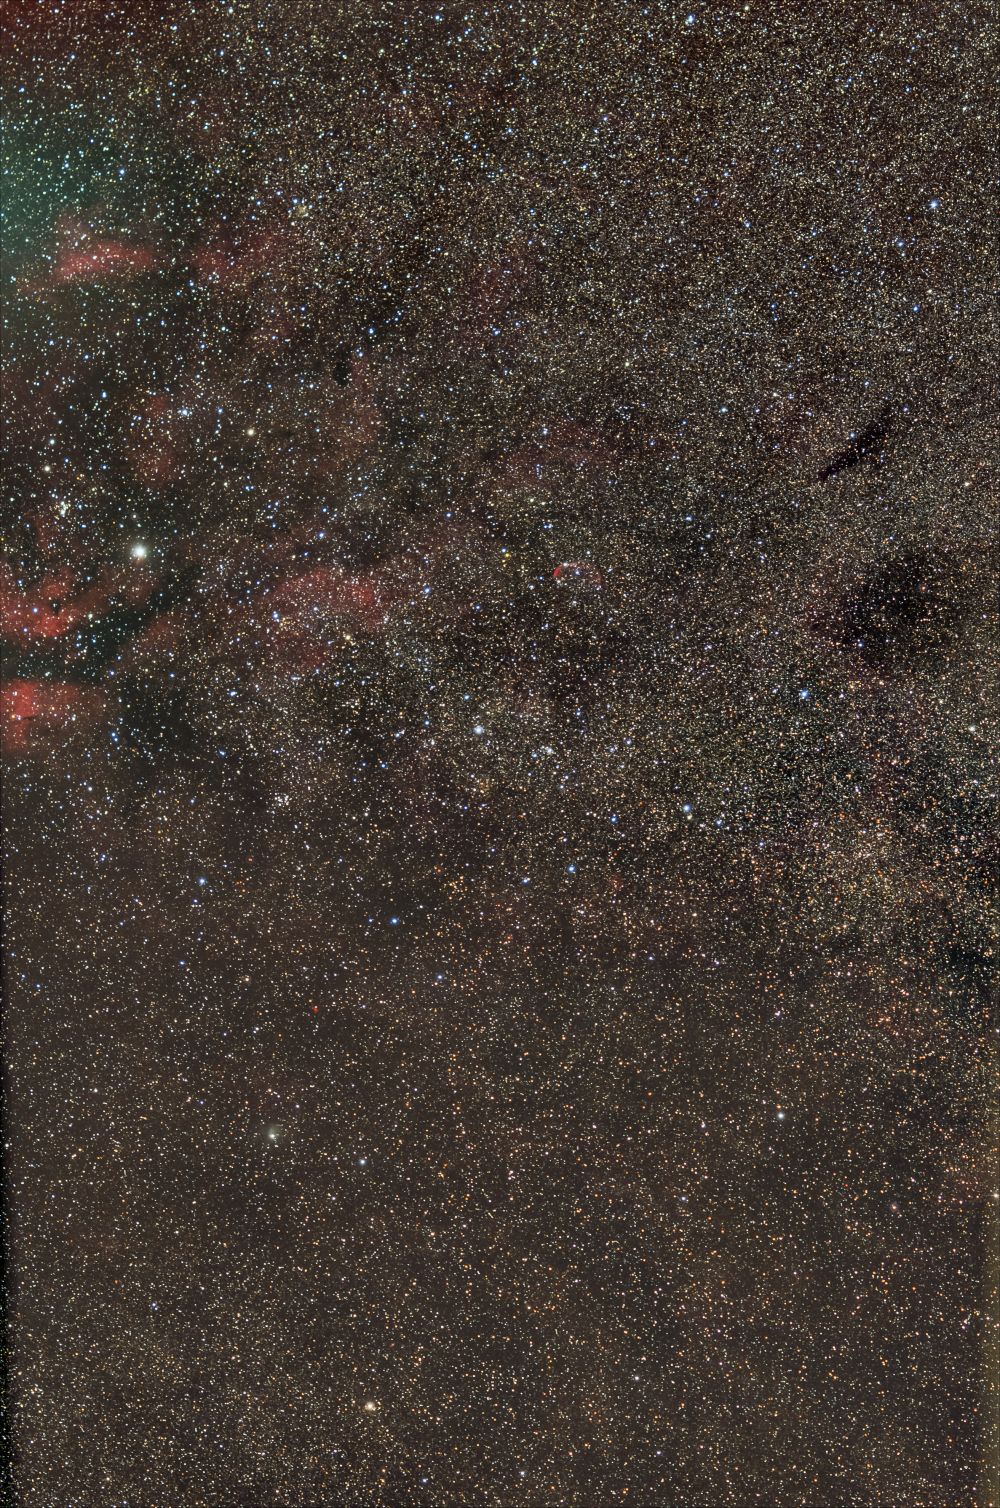 Участок МП в Лебеде , IC 1318 , NGC 6888